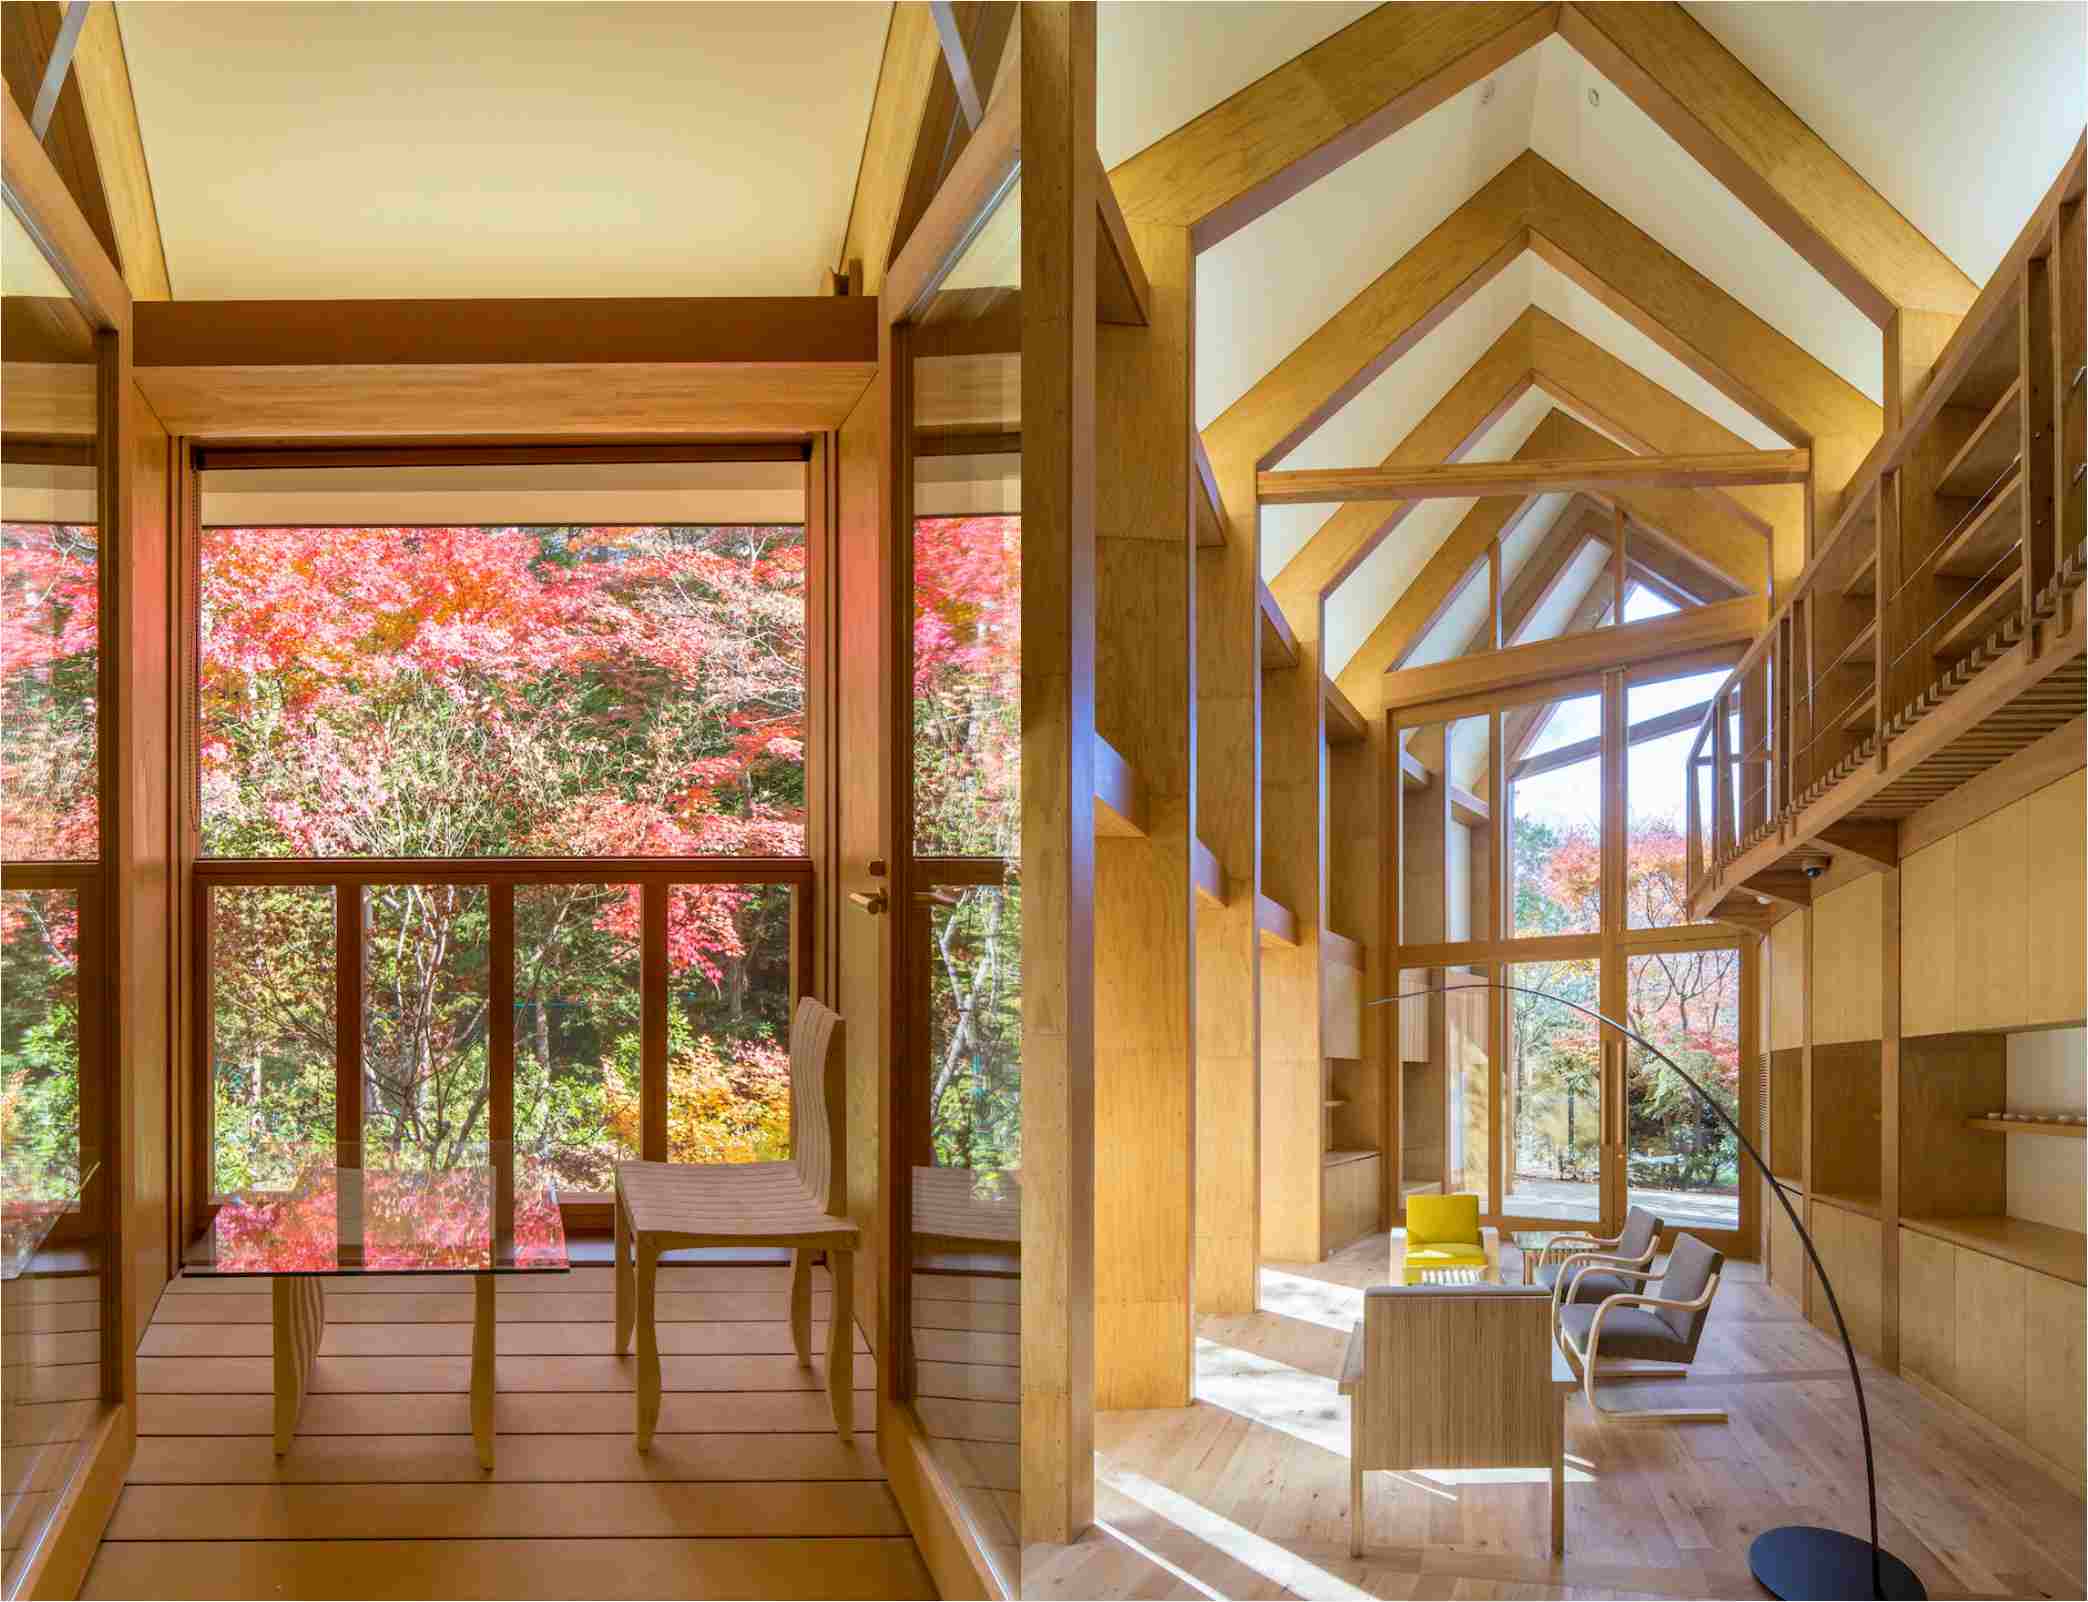 1호관 내부에서의 풍경. 일본 전통 주택에서 '창'은 자연을 집 안으로 들인다는 의미를 가져요.